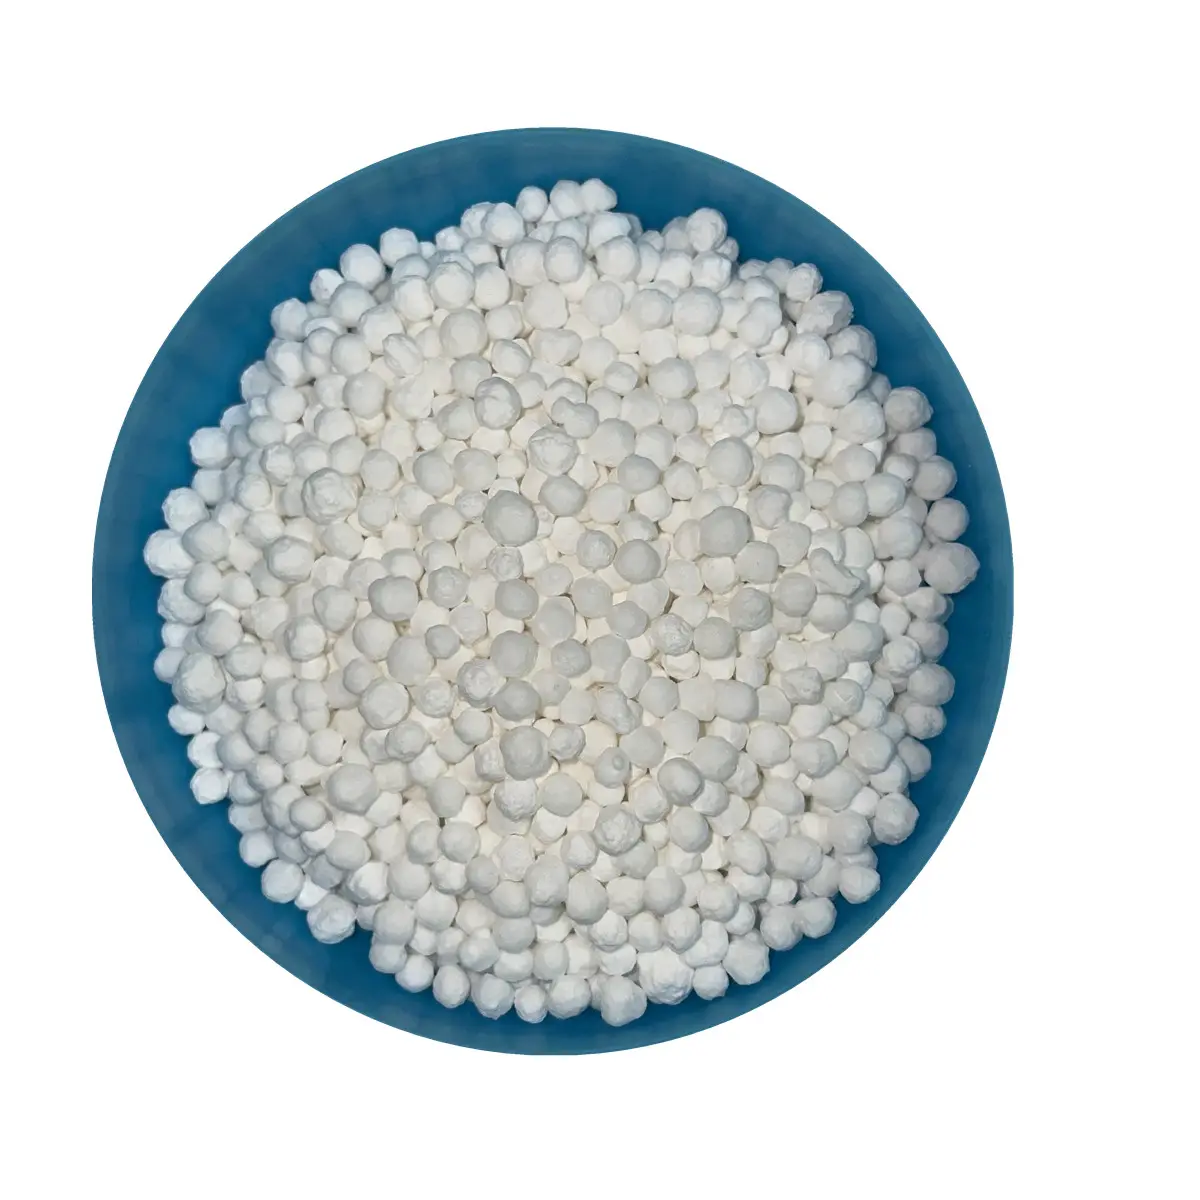 Shandong Productos químicos Grado alimenticio CaCl2 2H2O 74-77% Gránulos blancos Dihidrato Cloruro de calcio